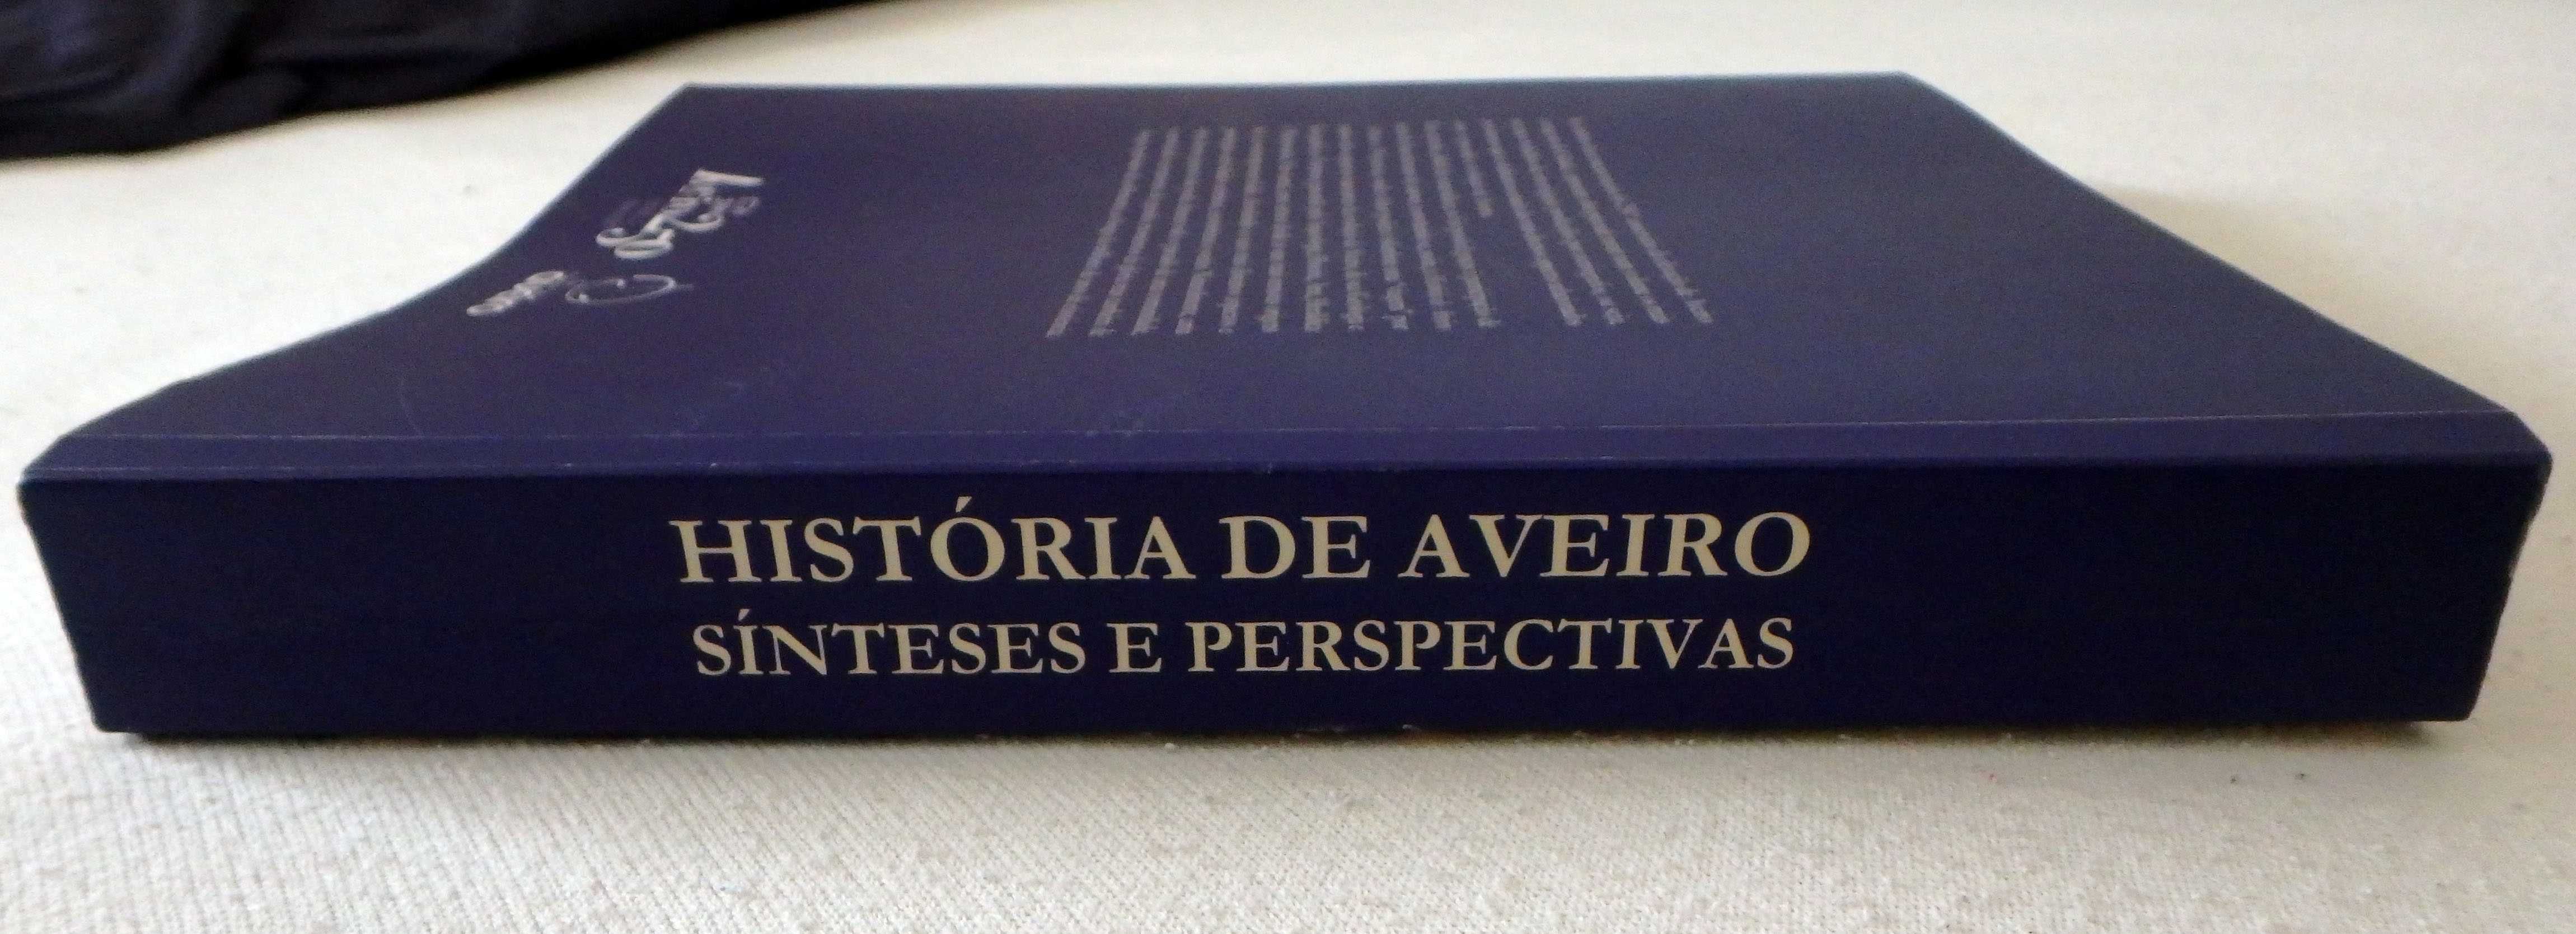 Livro História de Aveiro (Aveiro 250 anos)